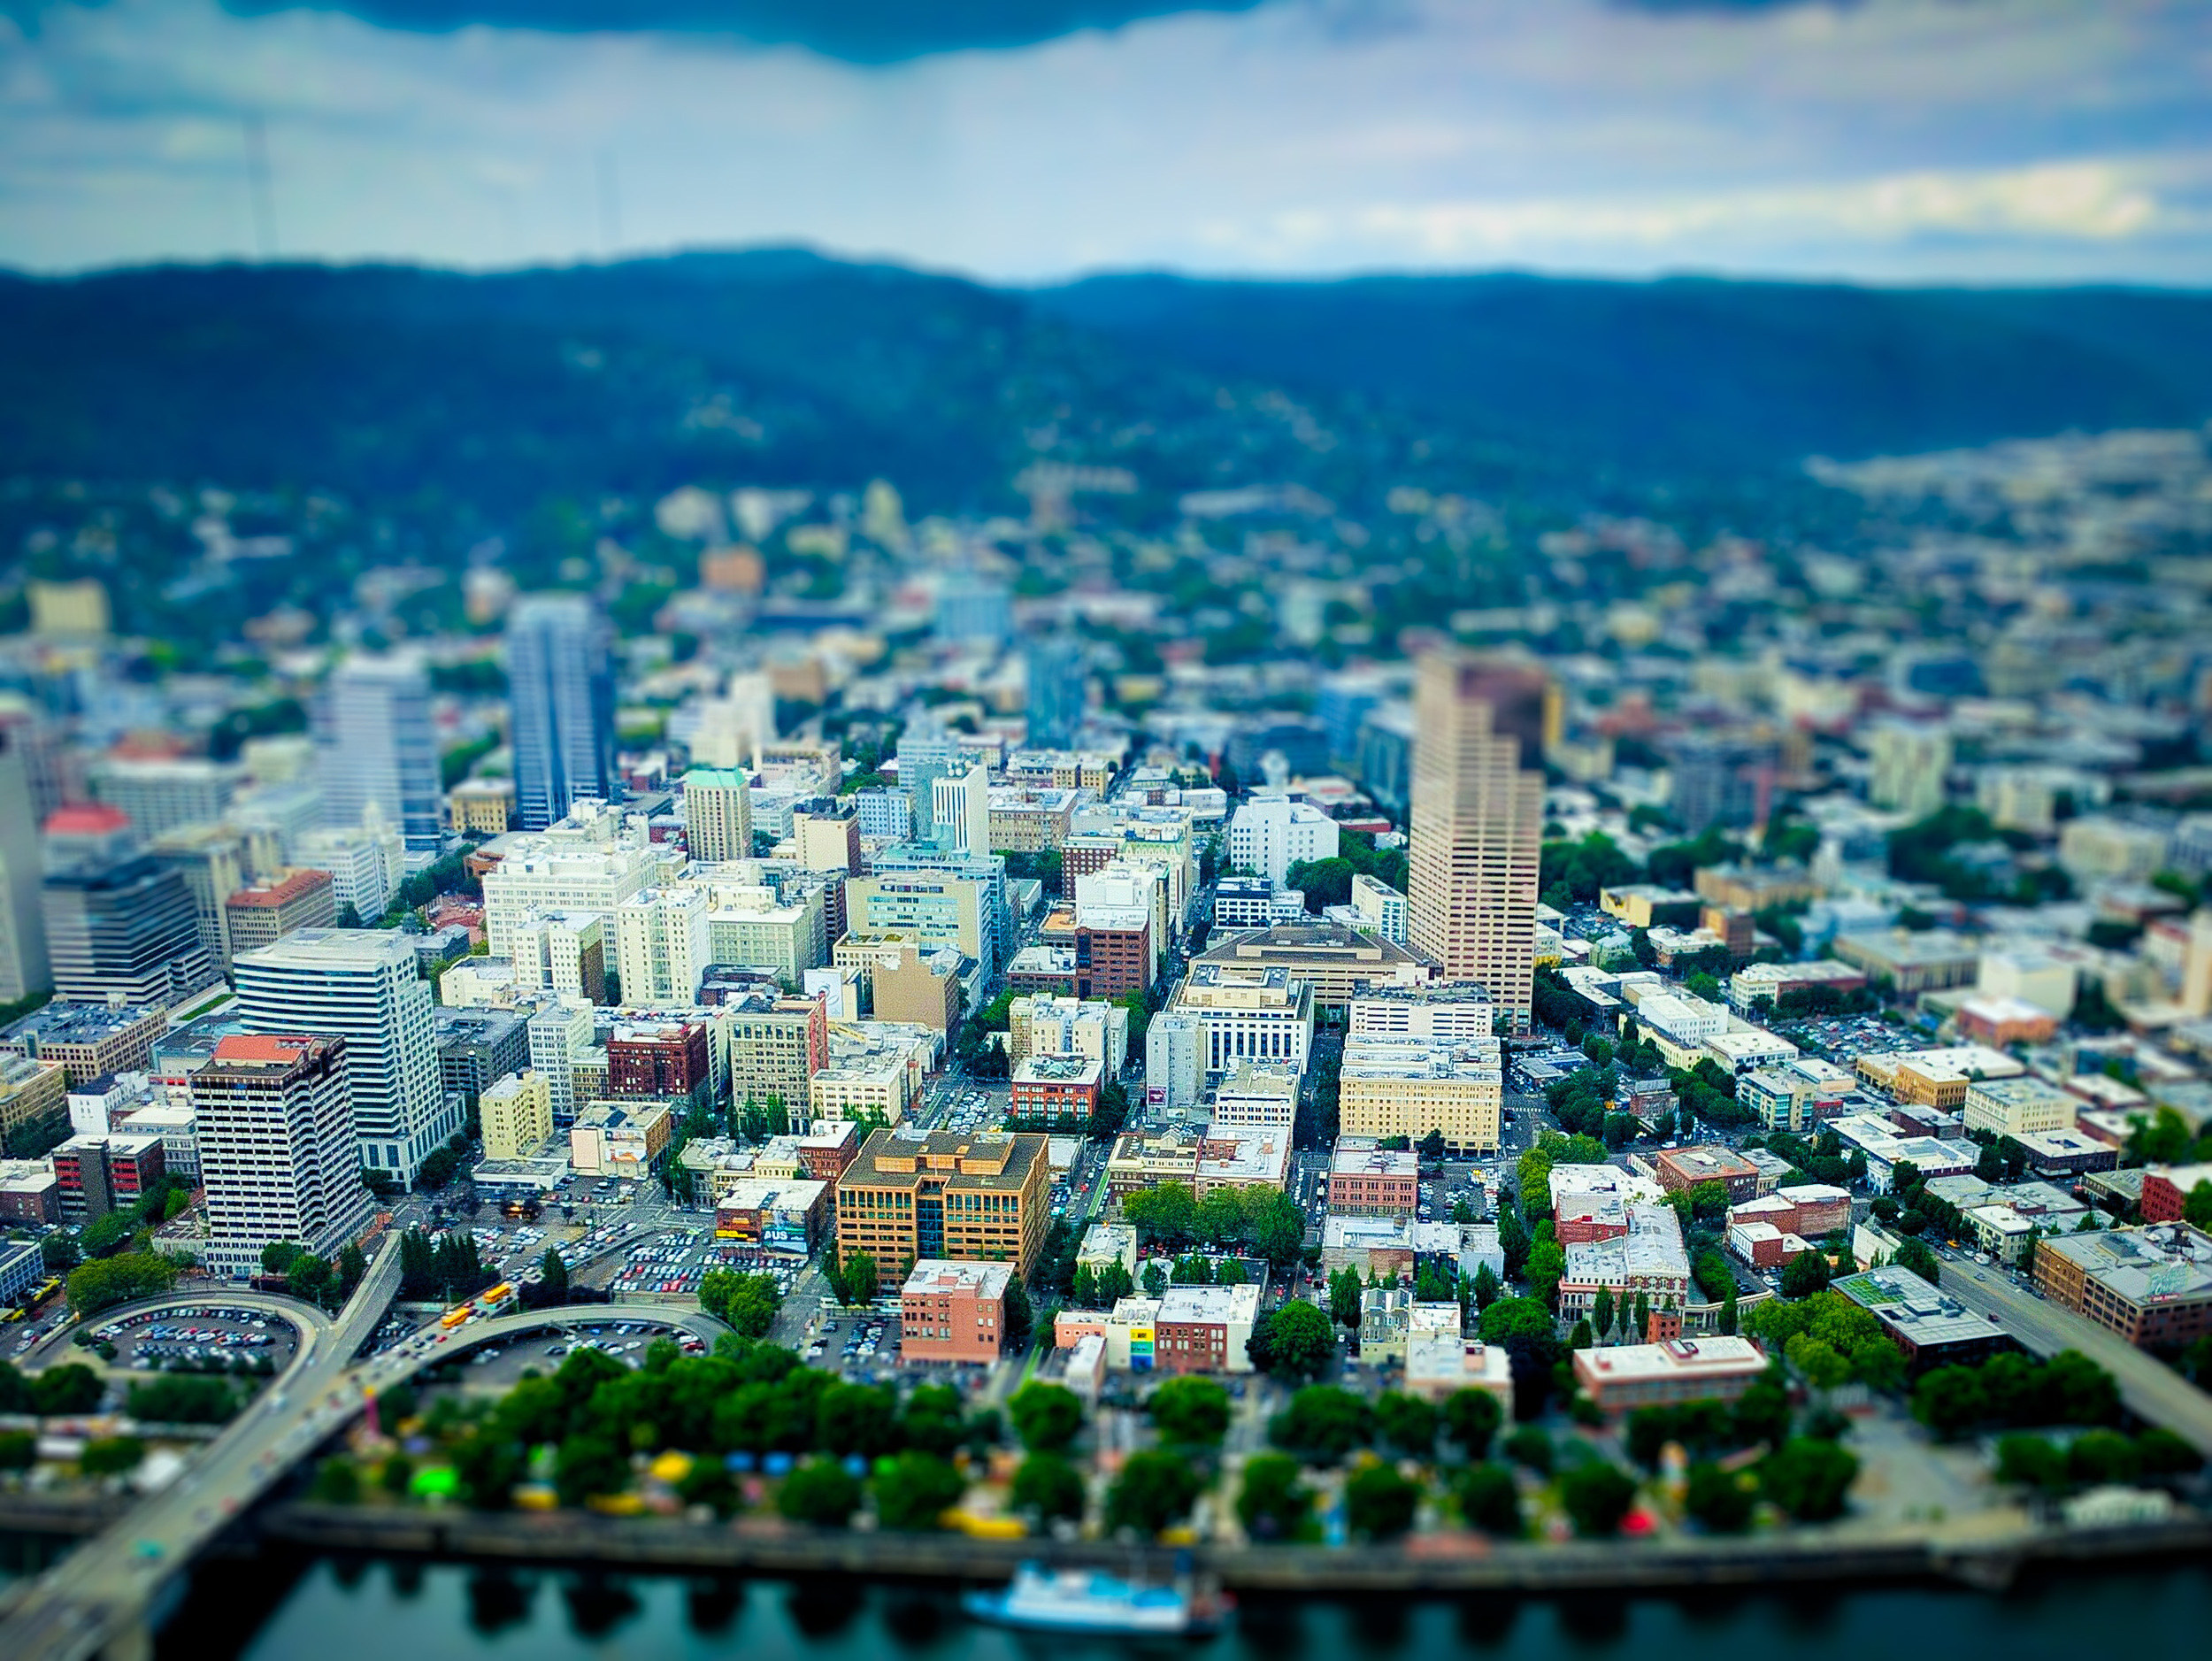 Miniaturized-Portland.jpg